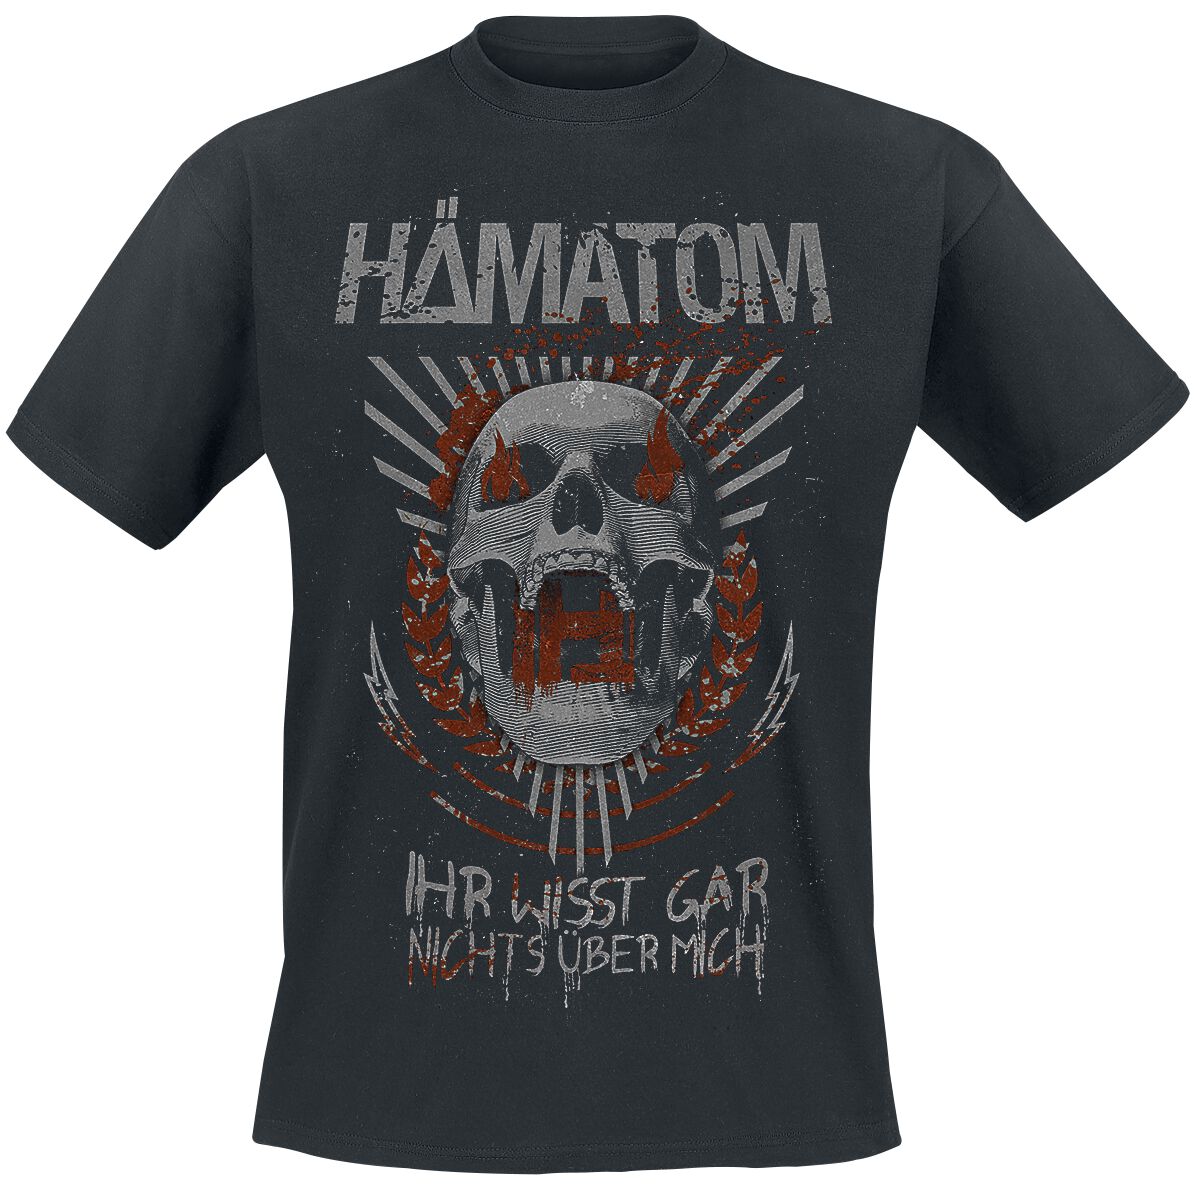 Hämatom T-Shirt - Ihr wisst gar nichts über mich - S bis 5XL - für Männer - Größe M - schwarz  - Lizenziertes Merchandise!